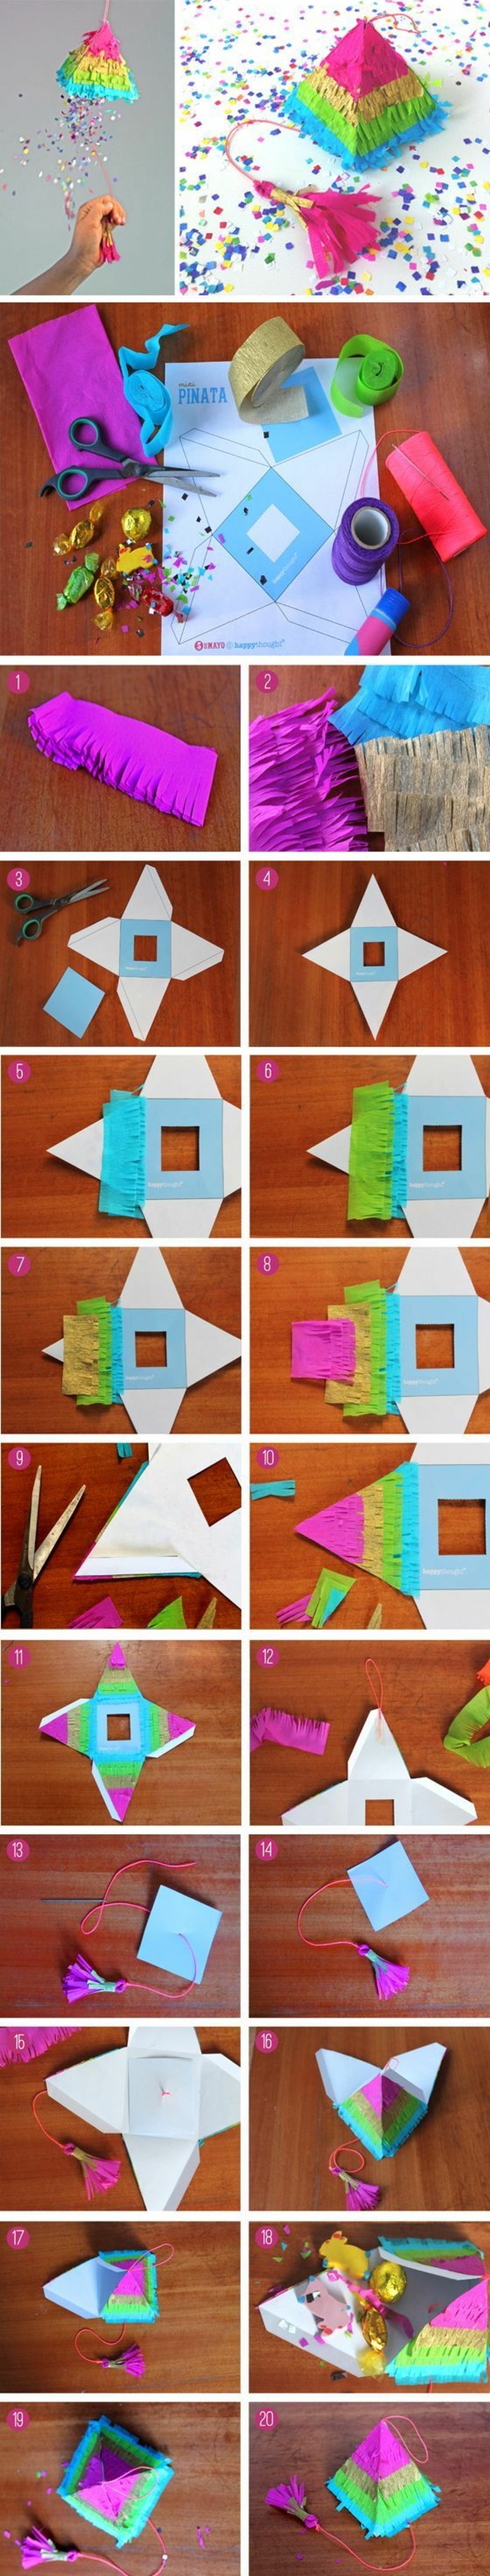 Hacer una pequeña pirámide de cartón usted mismo, papel de colores, tijeras